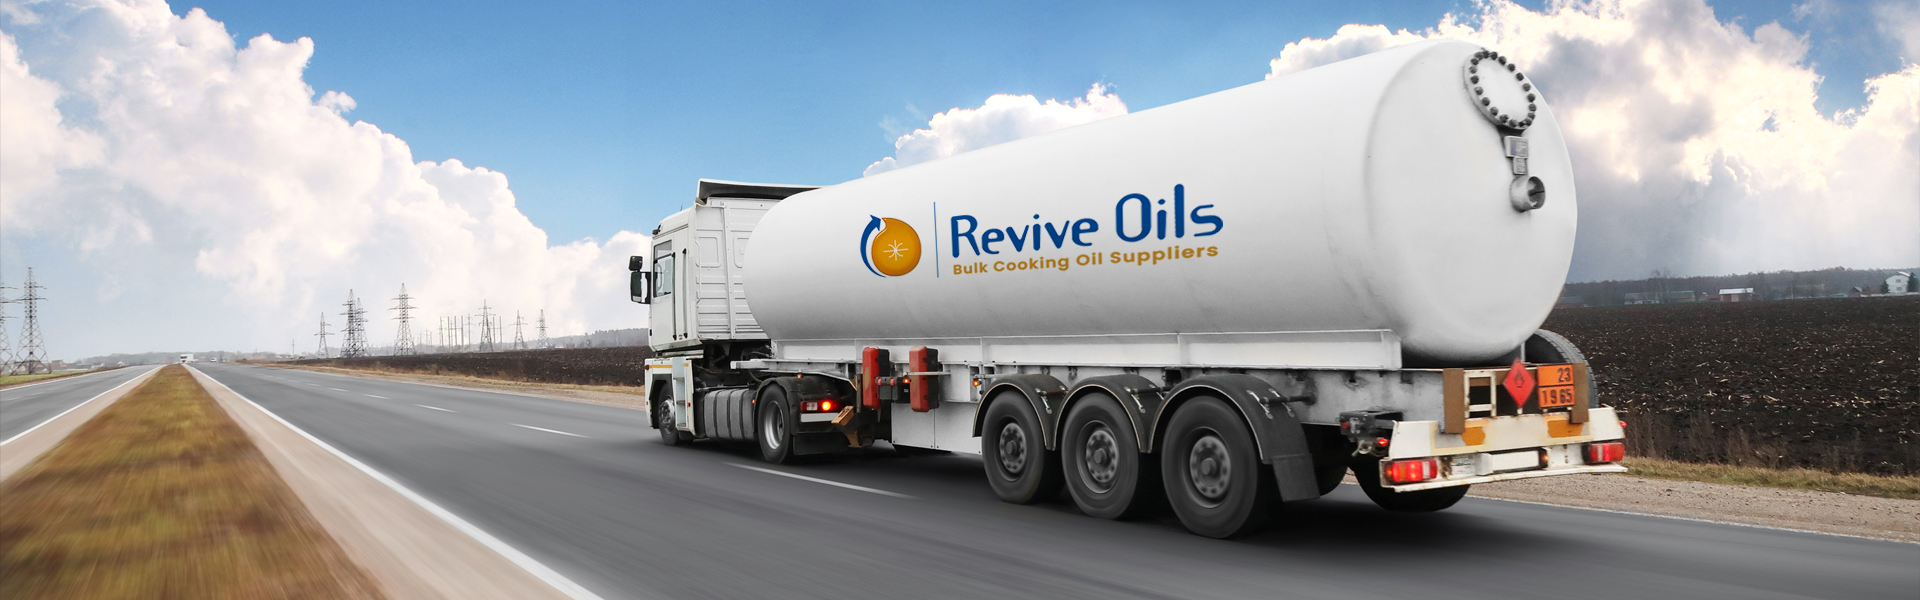 Bulk Canola Oil Suppliers in Victoria | Revive Oil